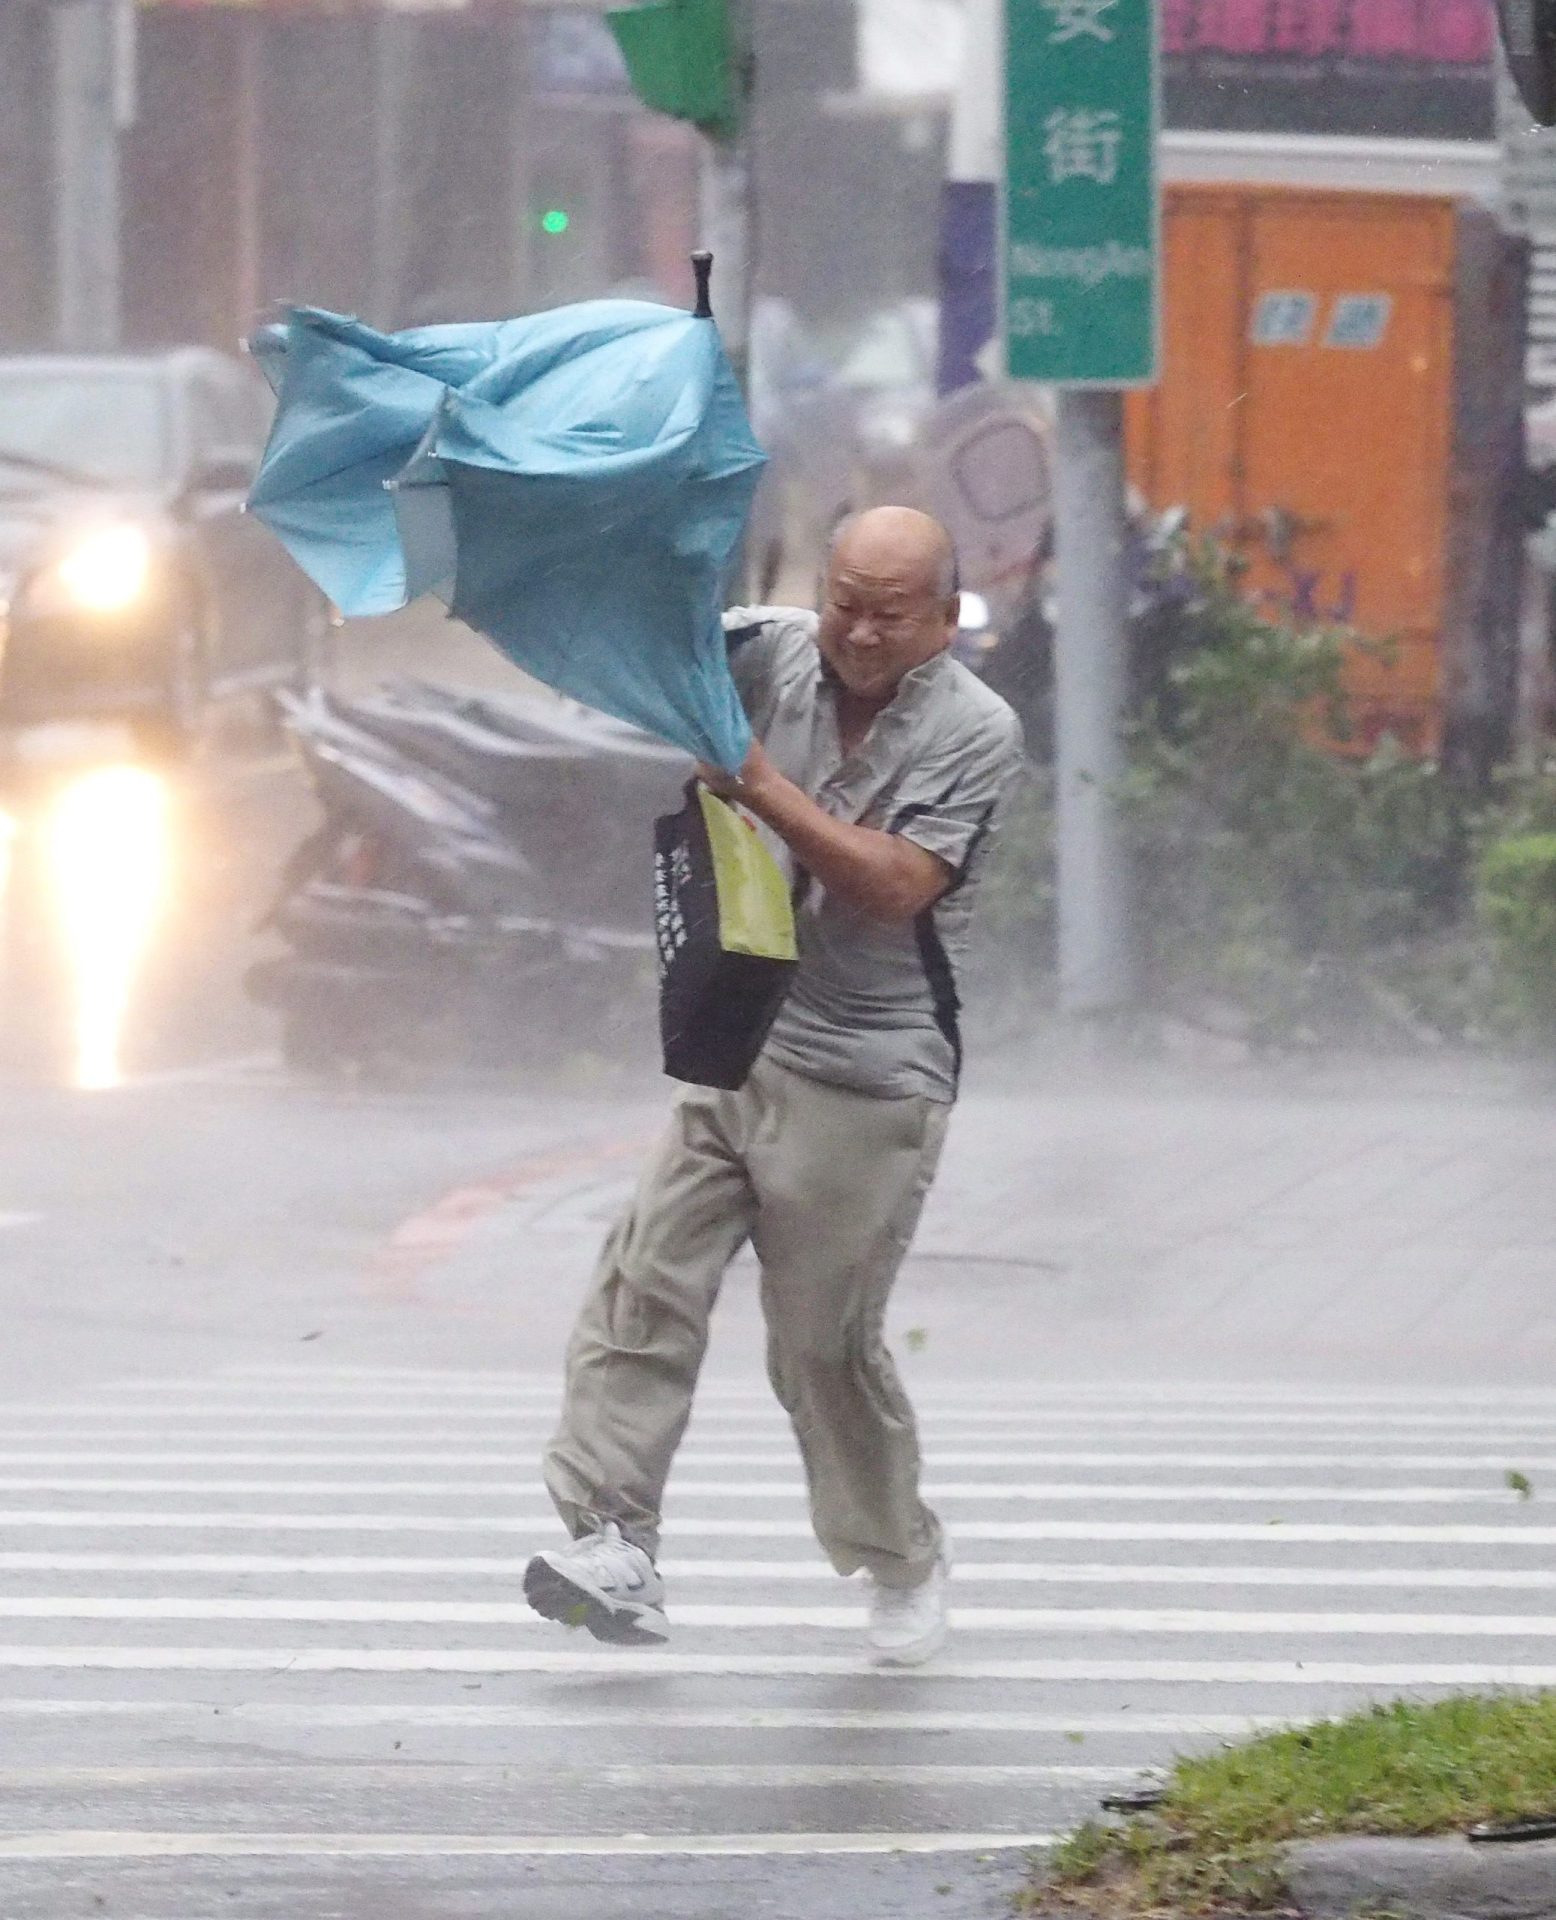 Tufão  fez dois mortos e mais de 300 feridos em Taiwan